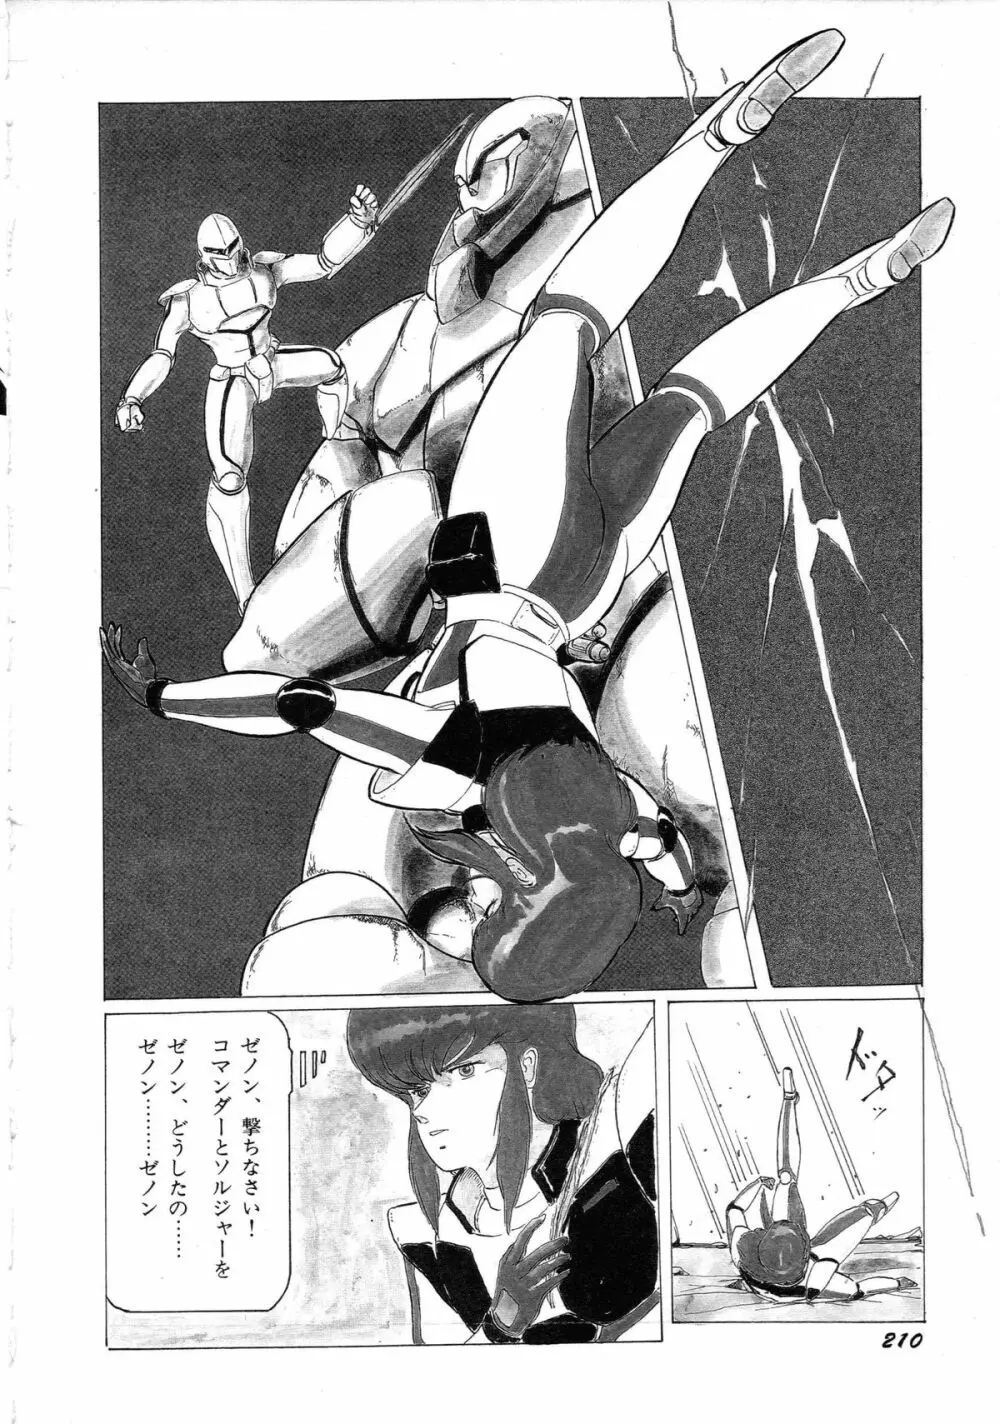 ロボット&美少女傑作選 レモン・ピープル1982-1986 214ページ